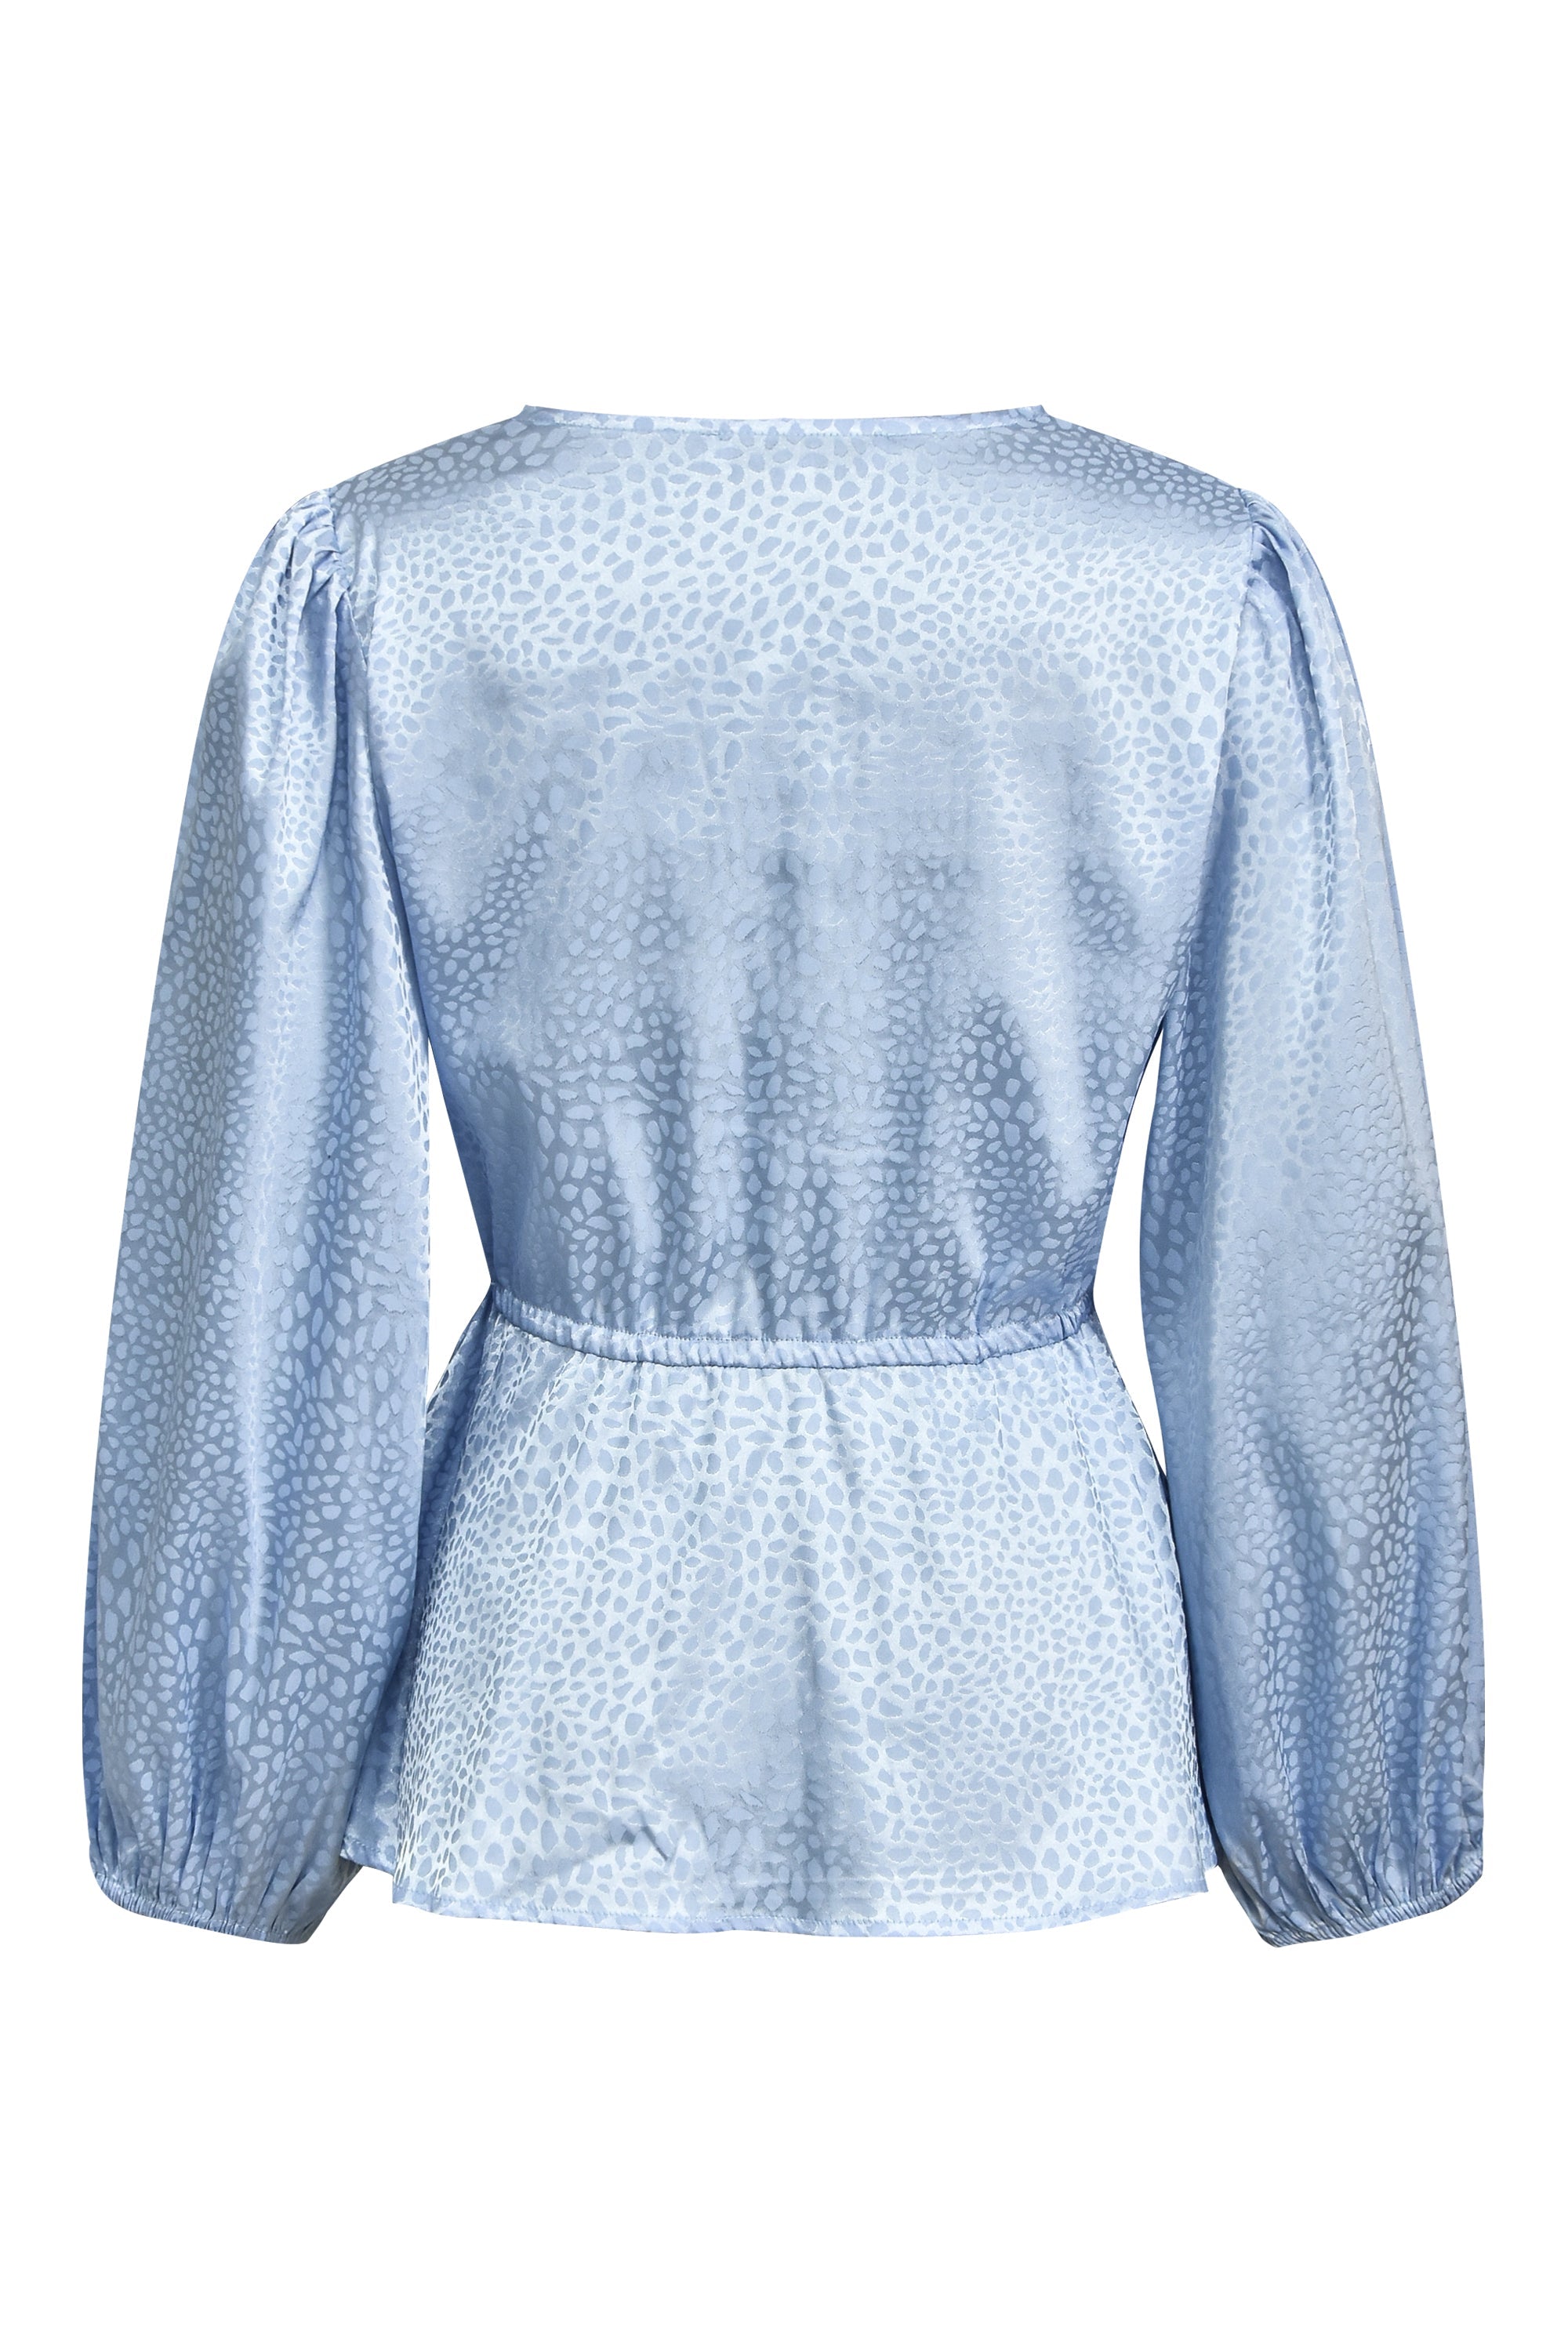 A-view - Luna blouse, light blue by A-view | stylebykul